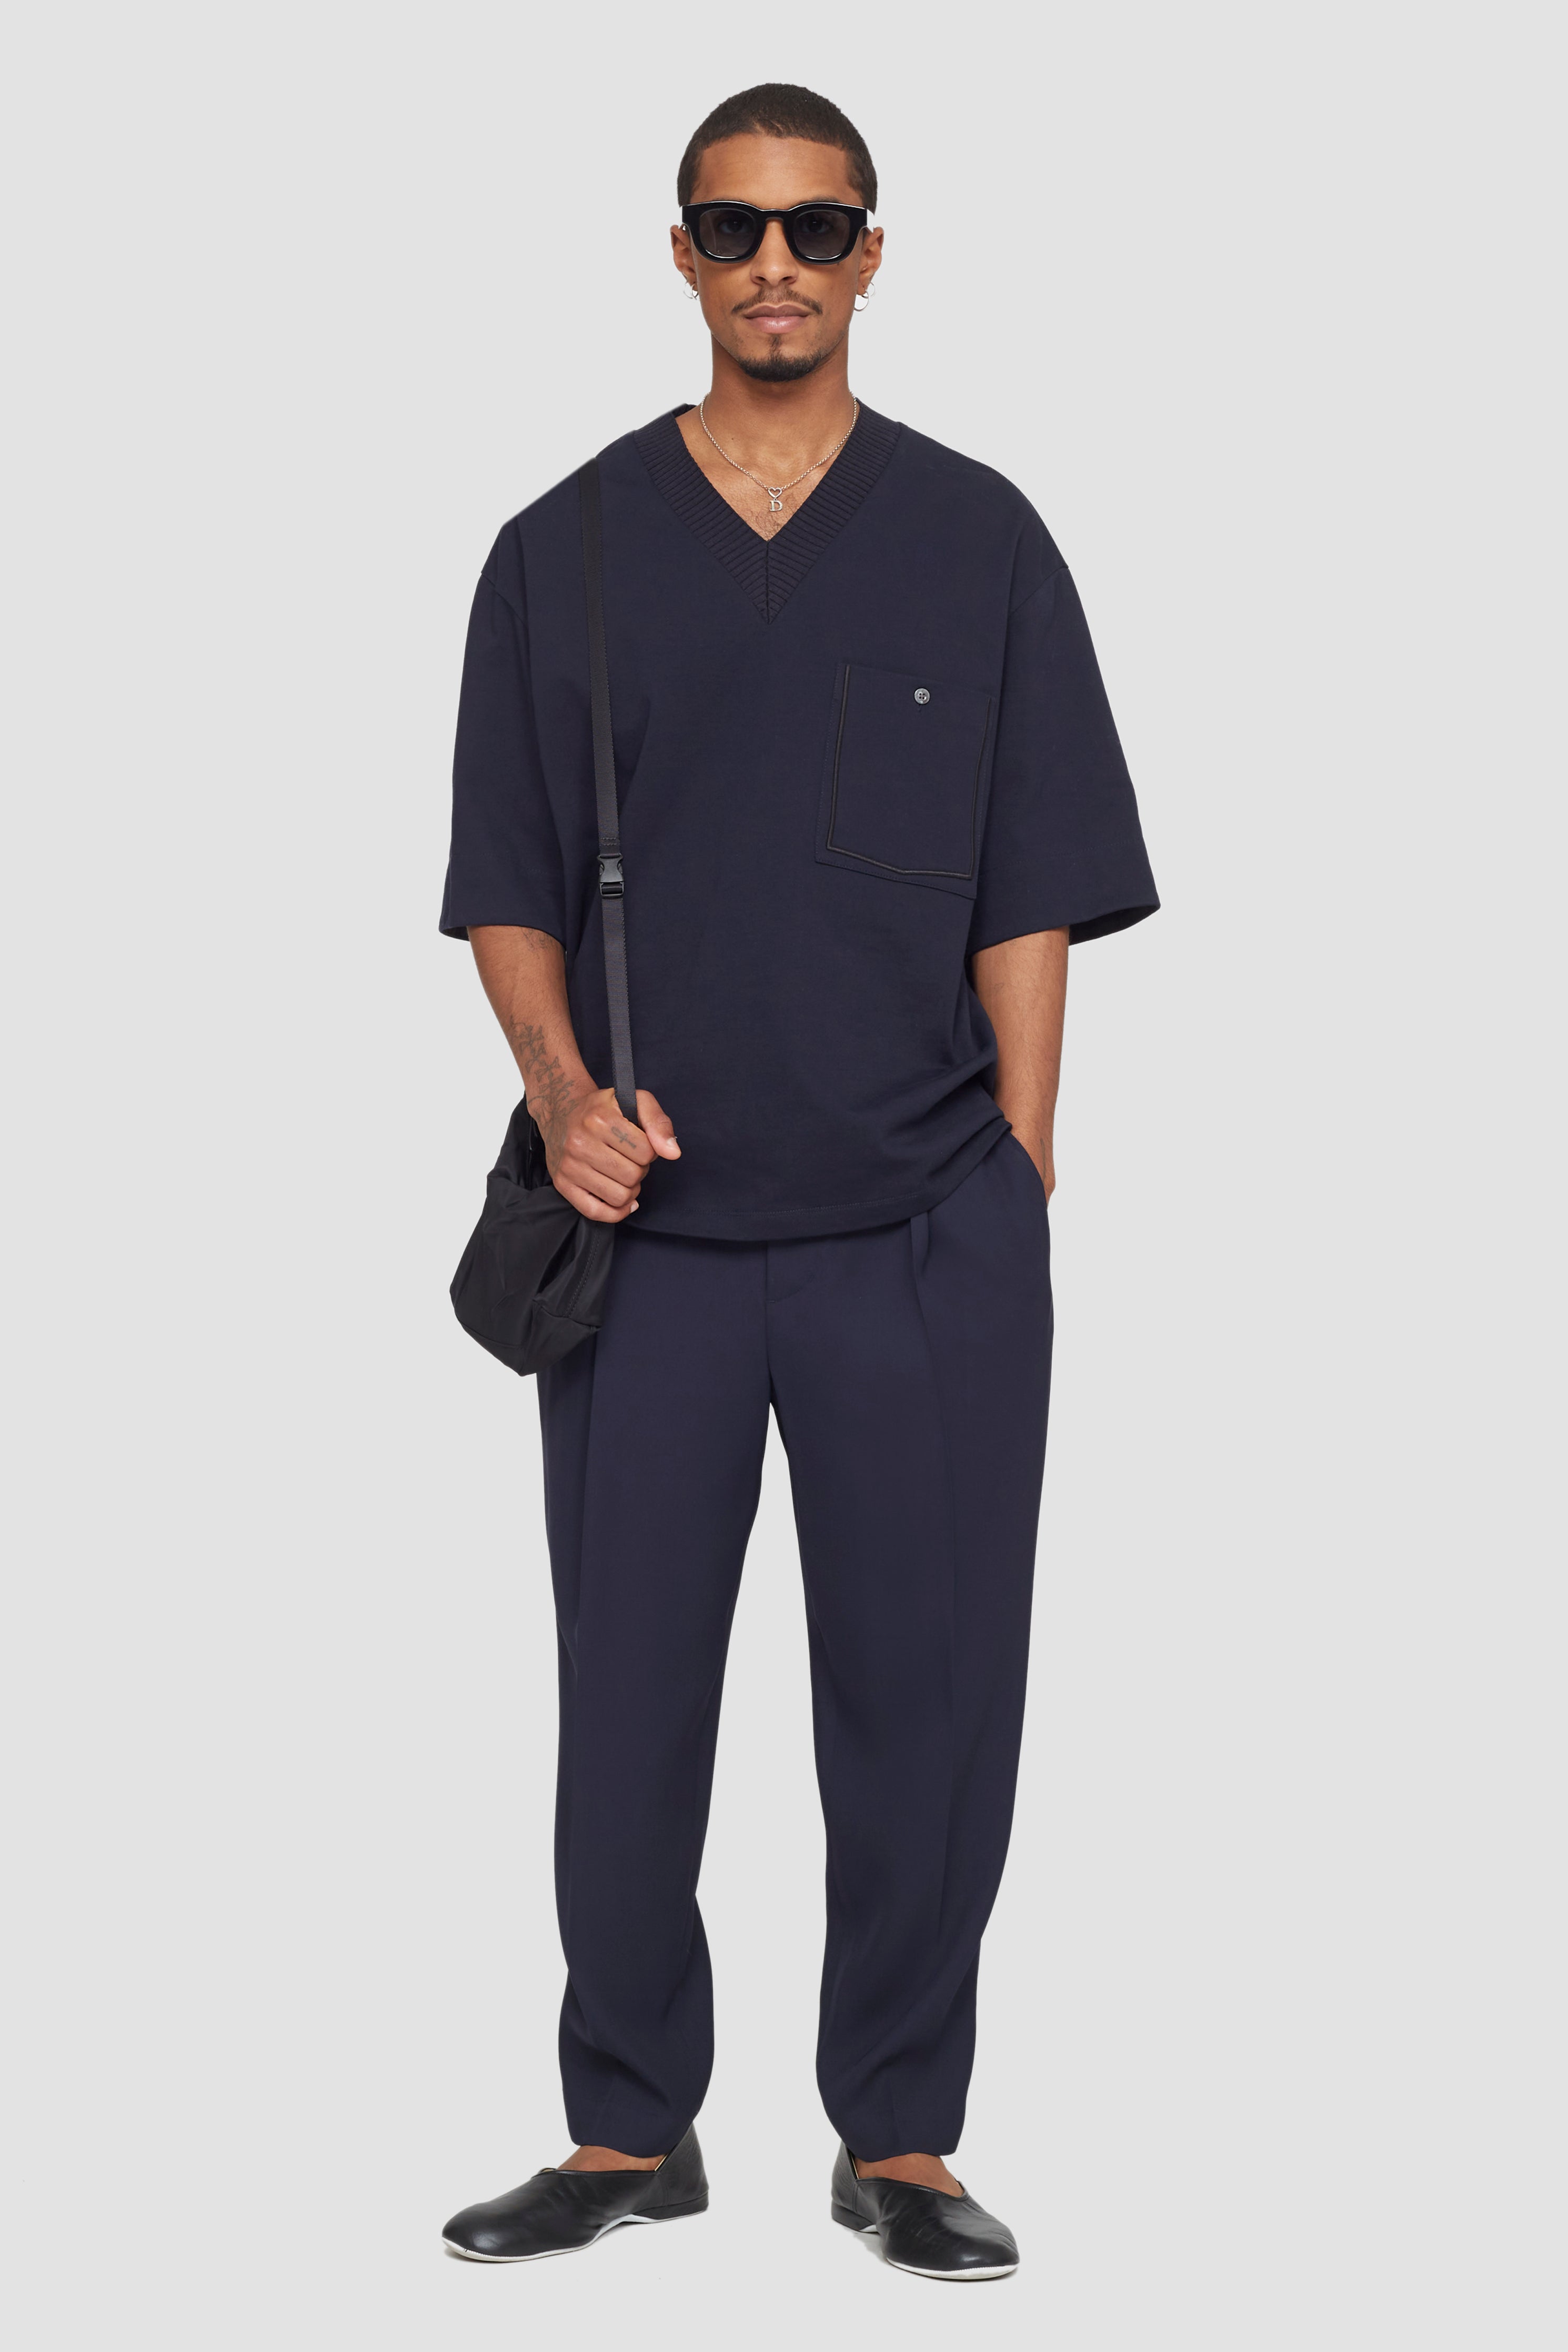 Mantoni Gray shades & Navy Wool Single-pleat Trousers in CA, NY, NJ, IL -  Moda Italy Fashion